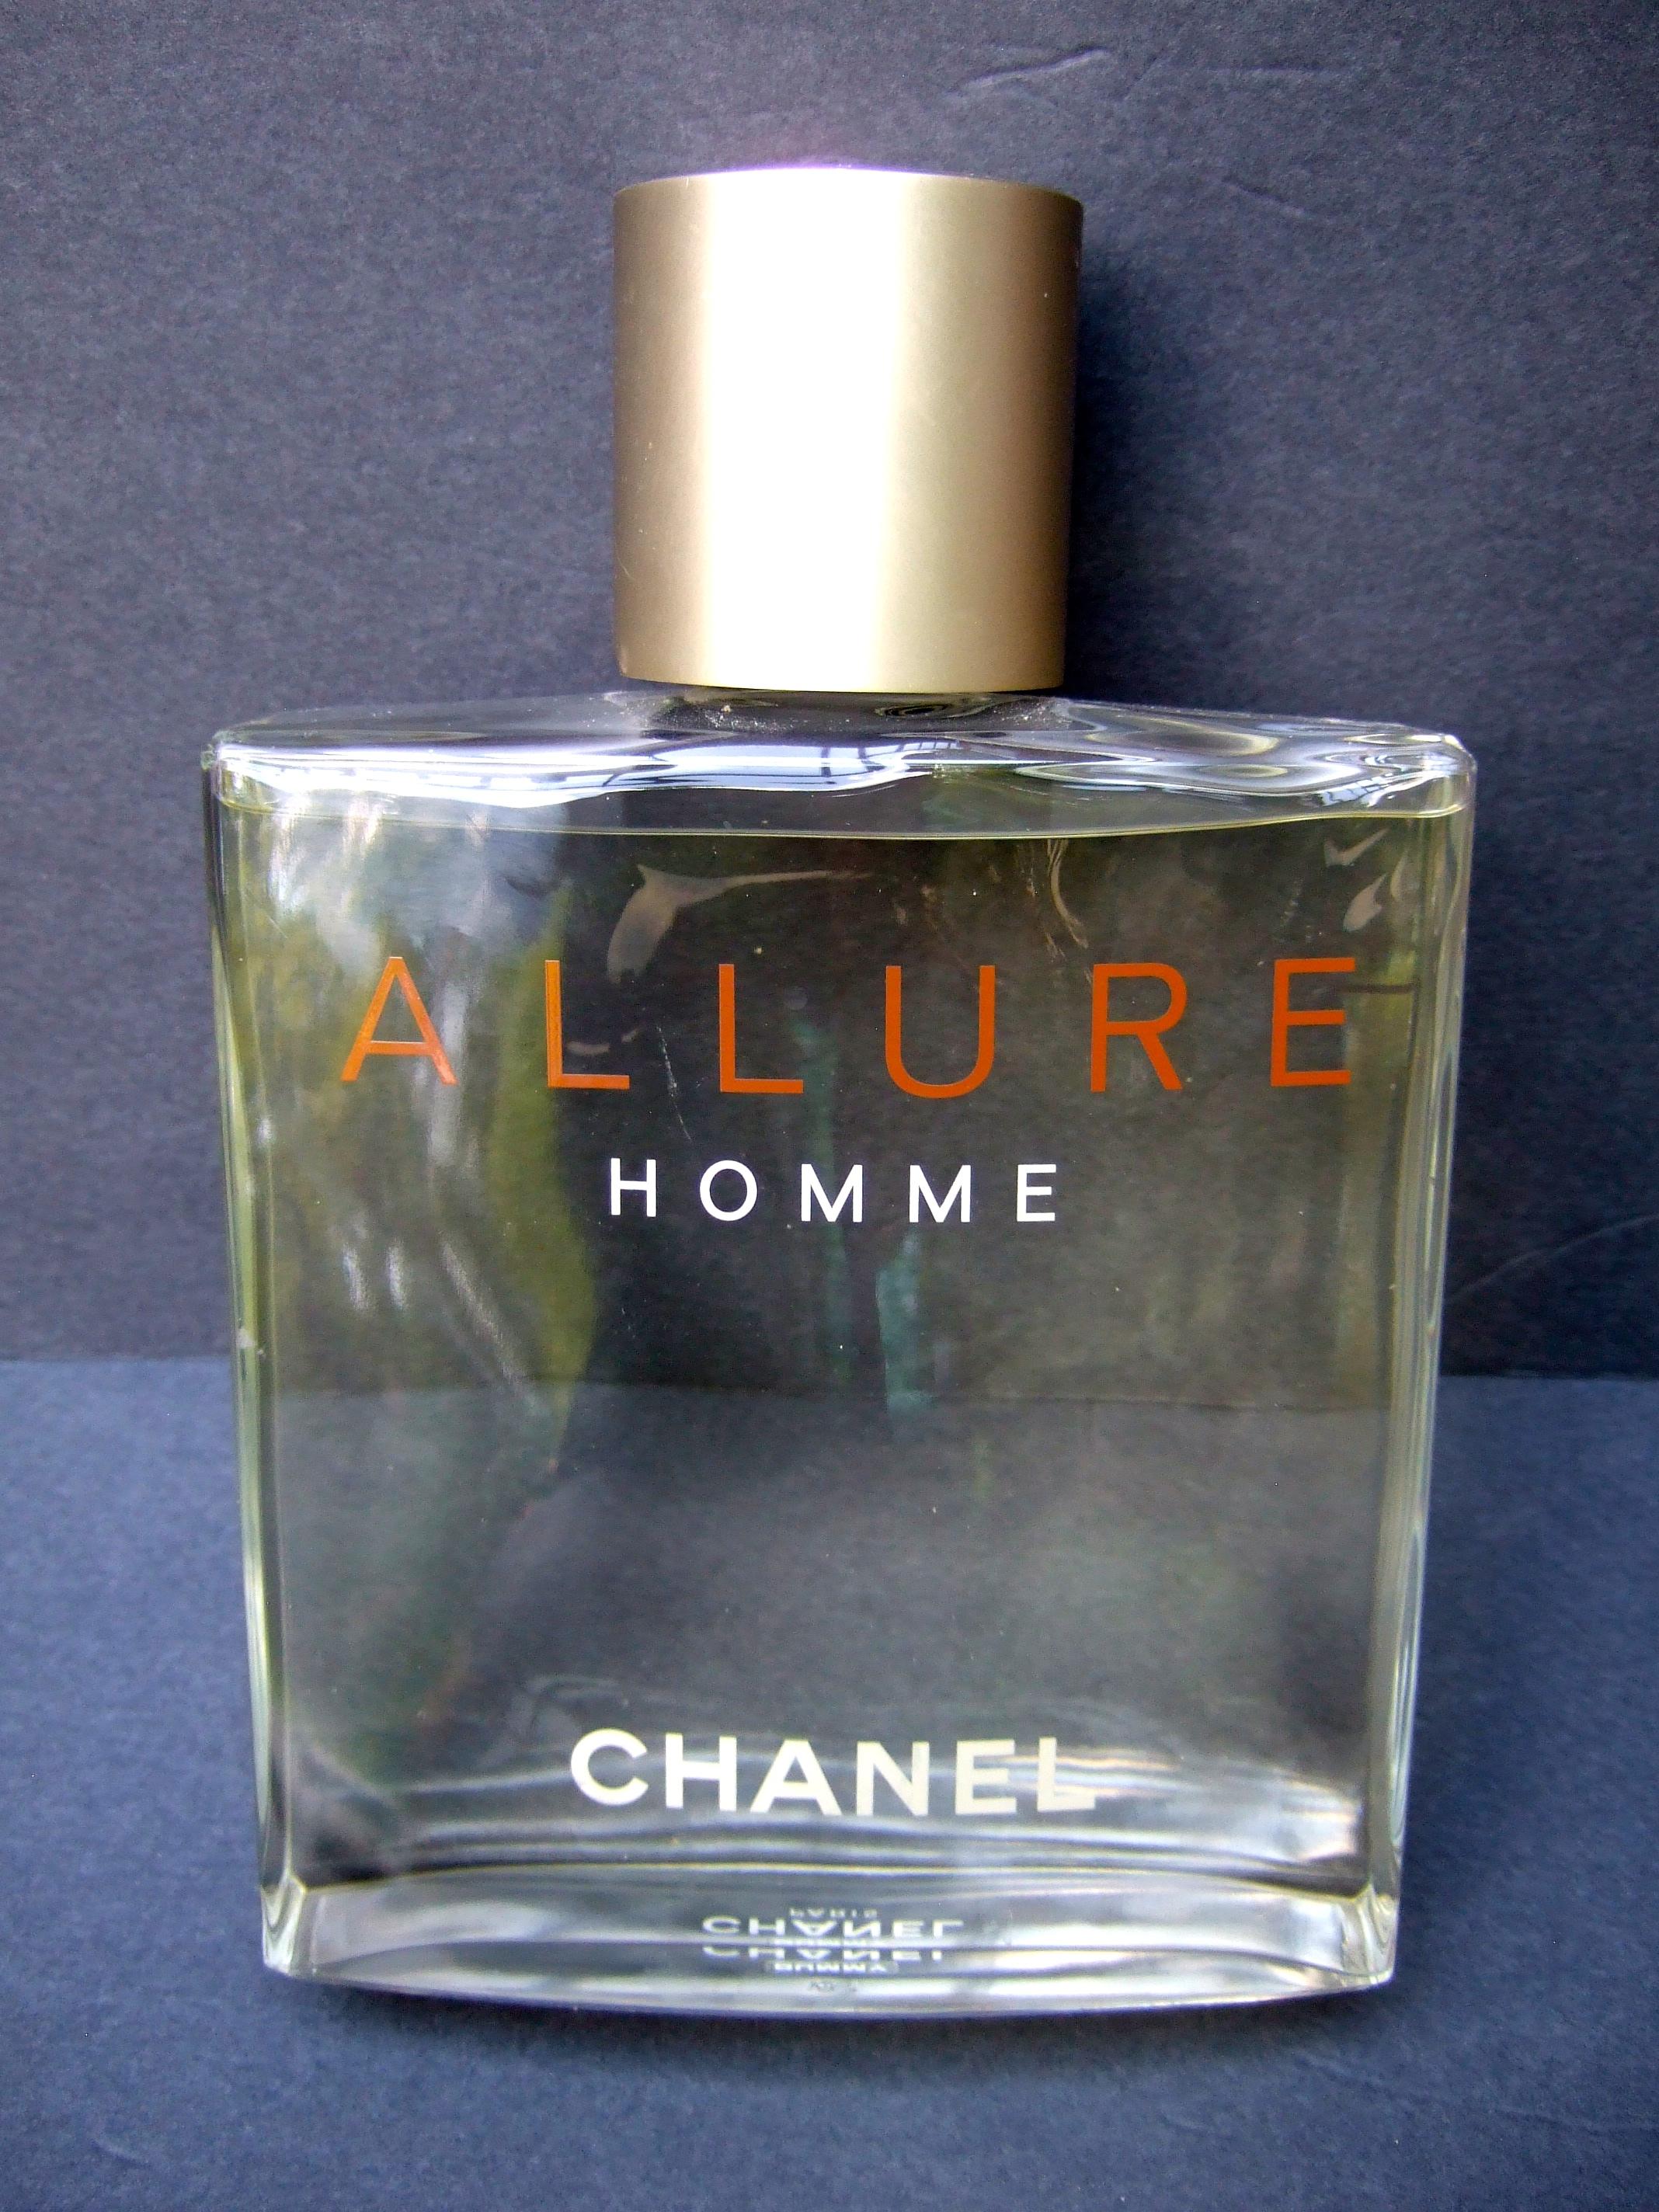 Chanel Allure Homme große Glasfactice Display Dummy Flasche c 21. 
Die riesige Glasflasche ist ein sehr stilvolles, dekoratives Sammlerstück
 Factice Dummy-Display-Flaschen sind mit farbigem Wasser gefüllt
werden an den Parfümtheken der Kaufhäuser